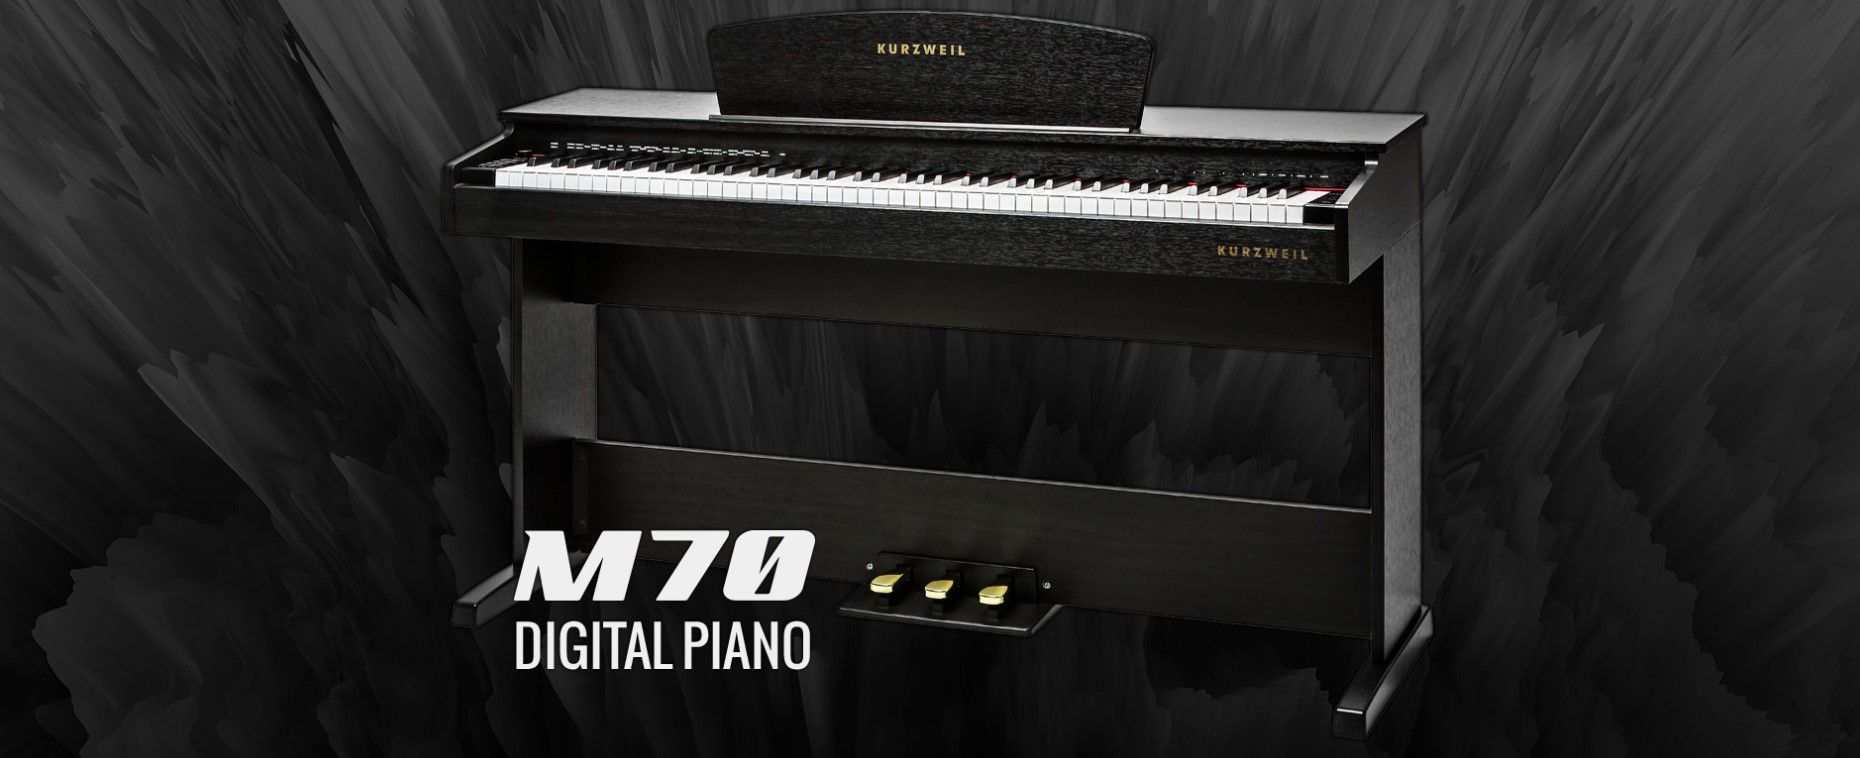  digitális zongora kurzweil M70 SR fejhallgató csatlakozó kiváló ár/minőség arány könnyen kezelhető usb port midi automatikus kíséret